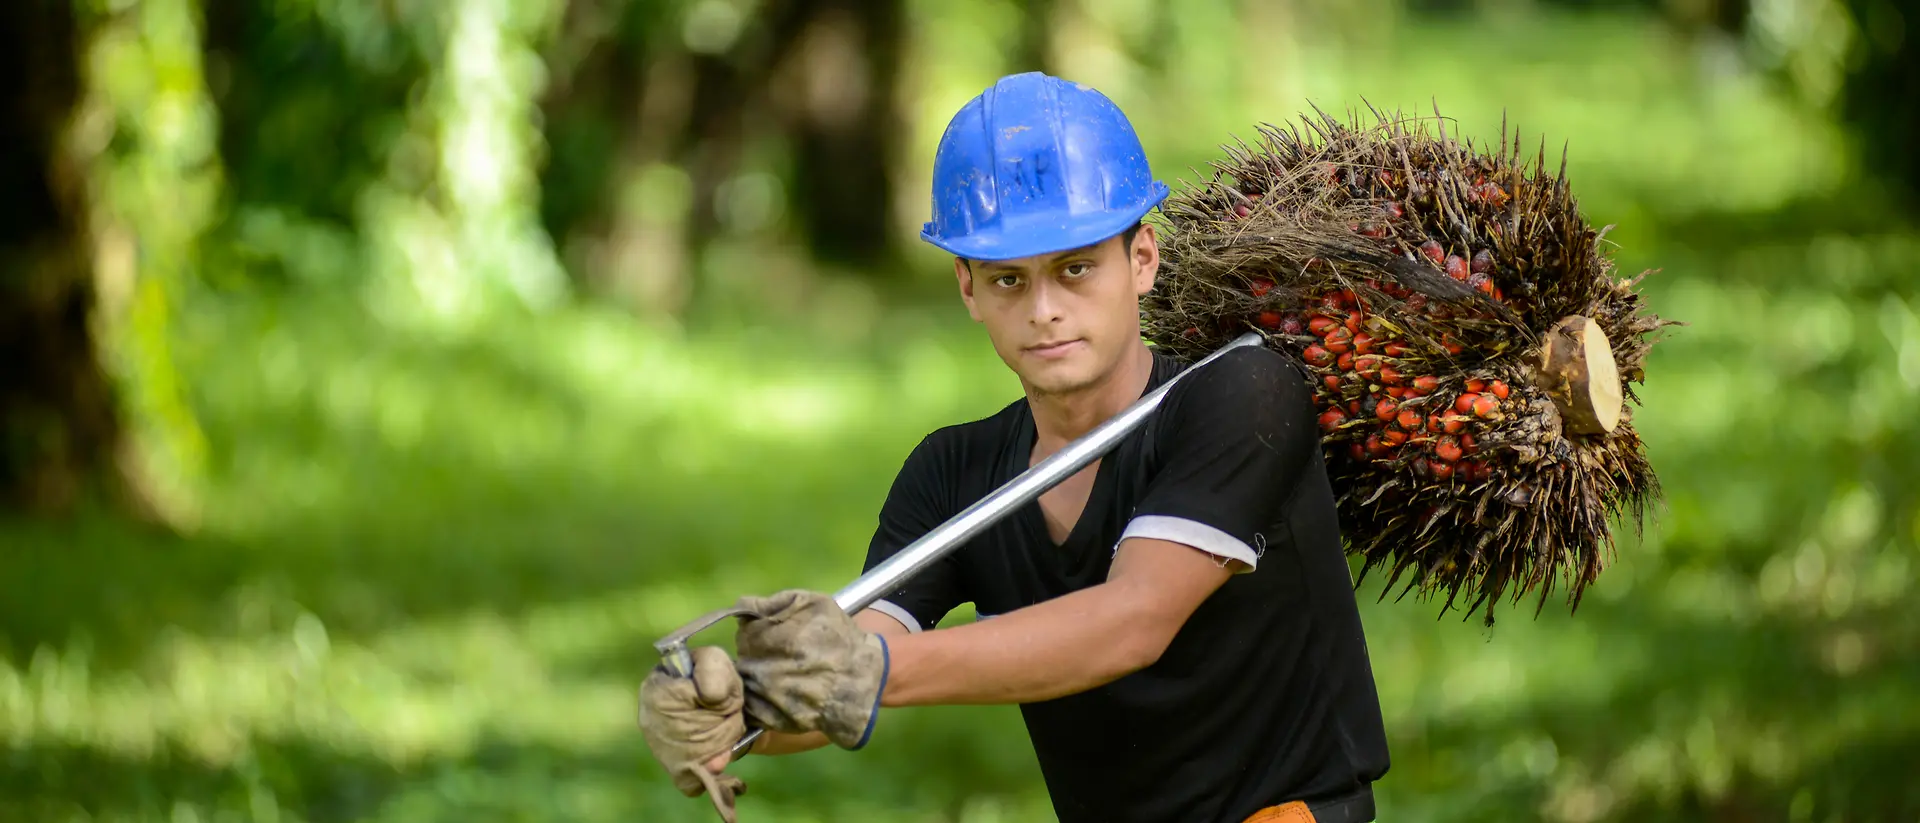 Trabalhador com capacete azul, a carregar frutos de palmeira numa plantação de palmeiras